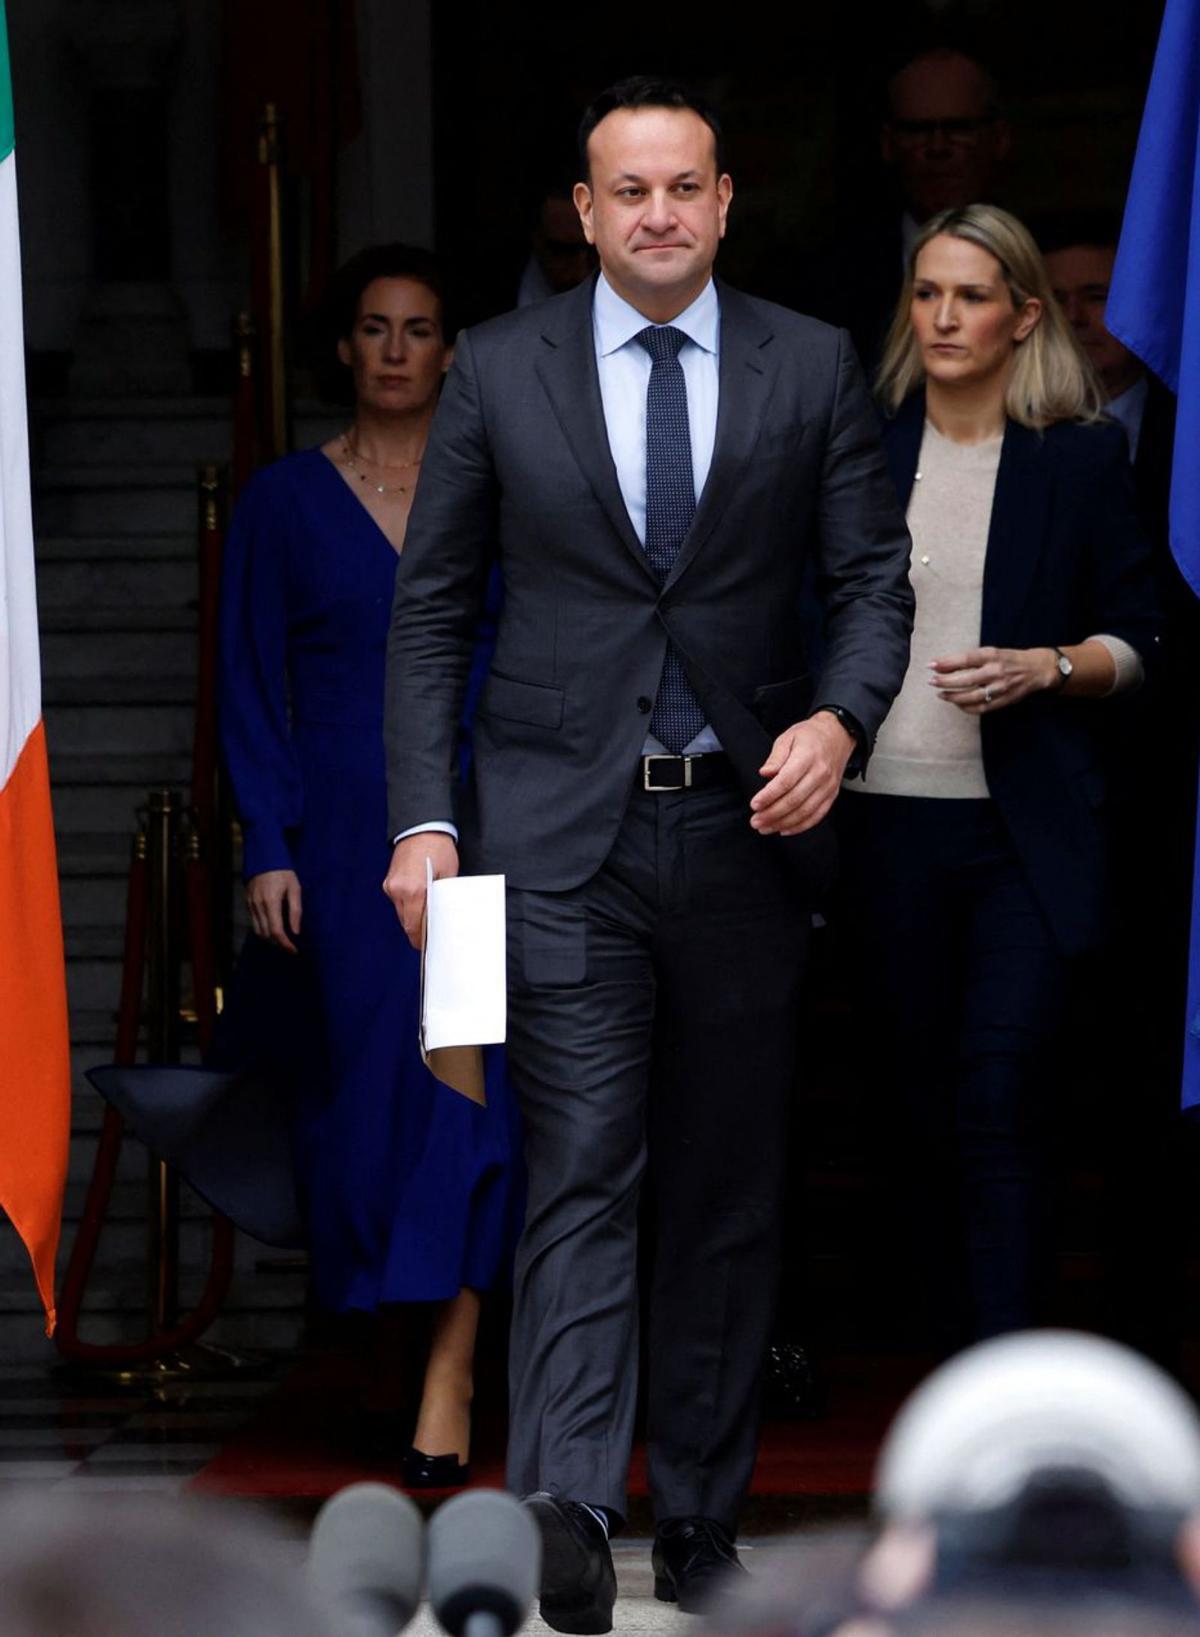 El primer ministre d’Irlanda dimiteix pels mals pronòstics electorals